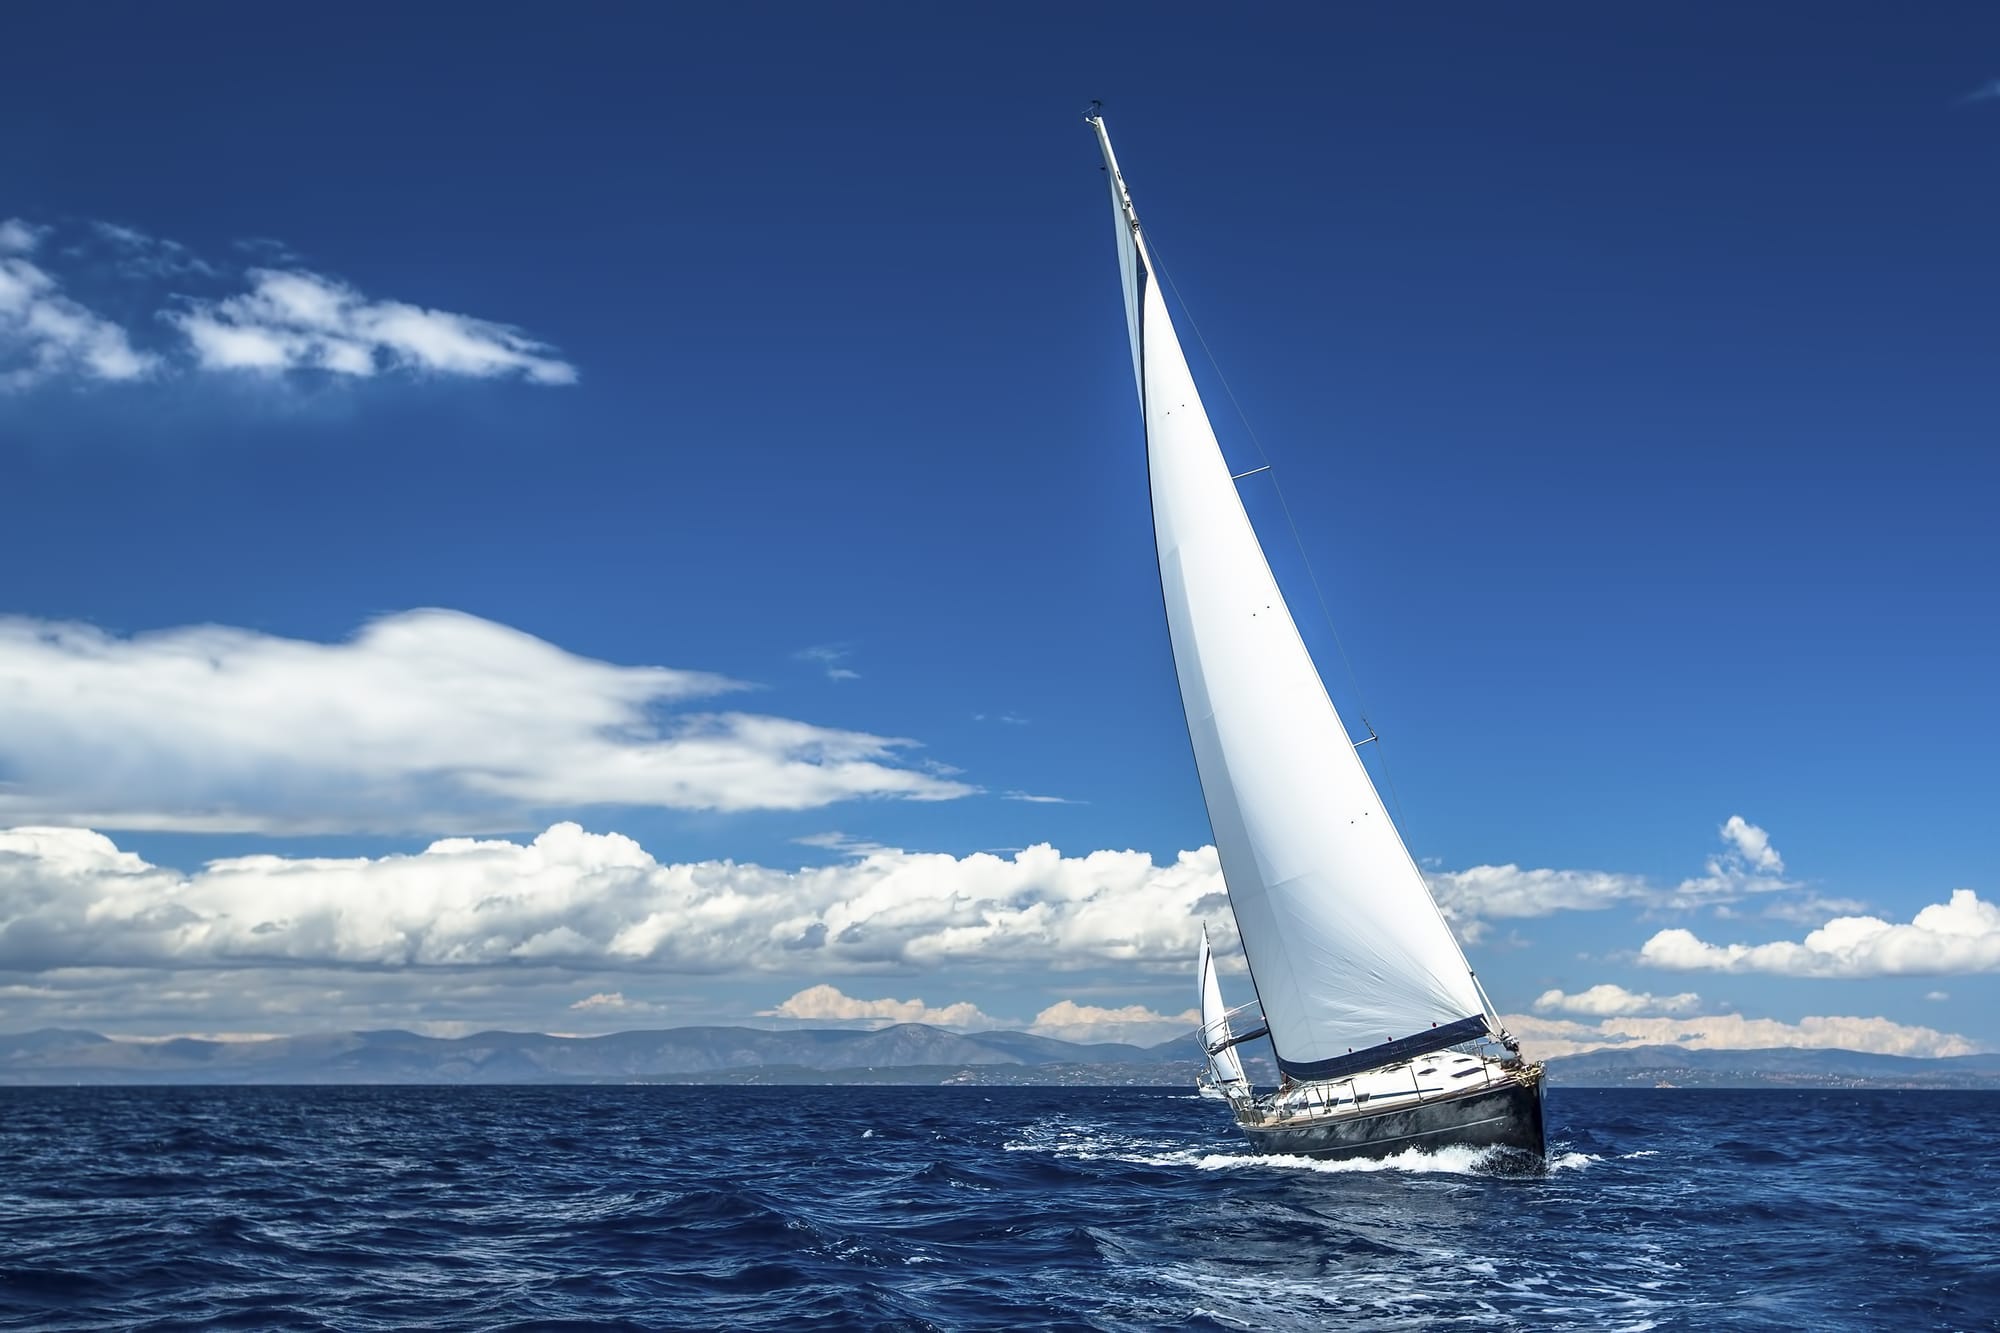 sailing-into-serenity.jpg